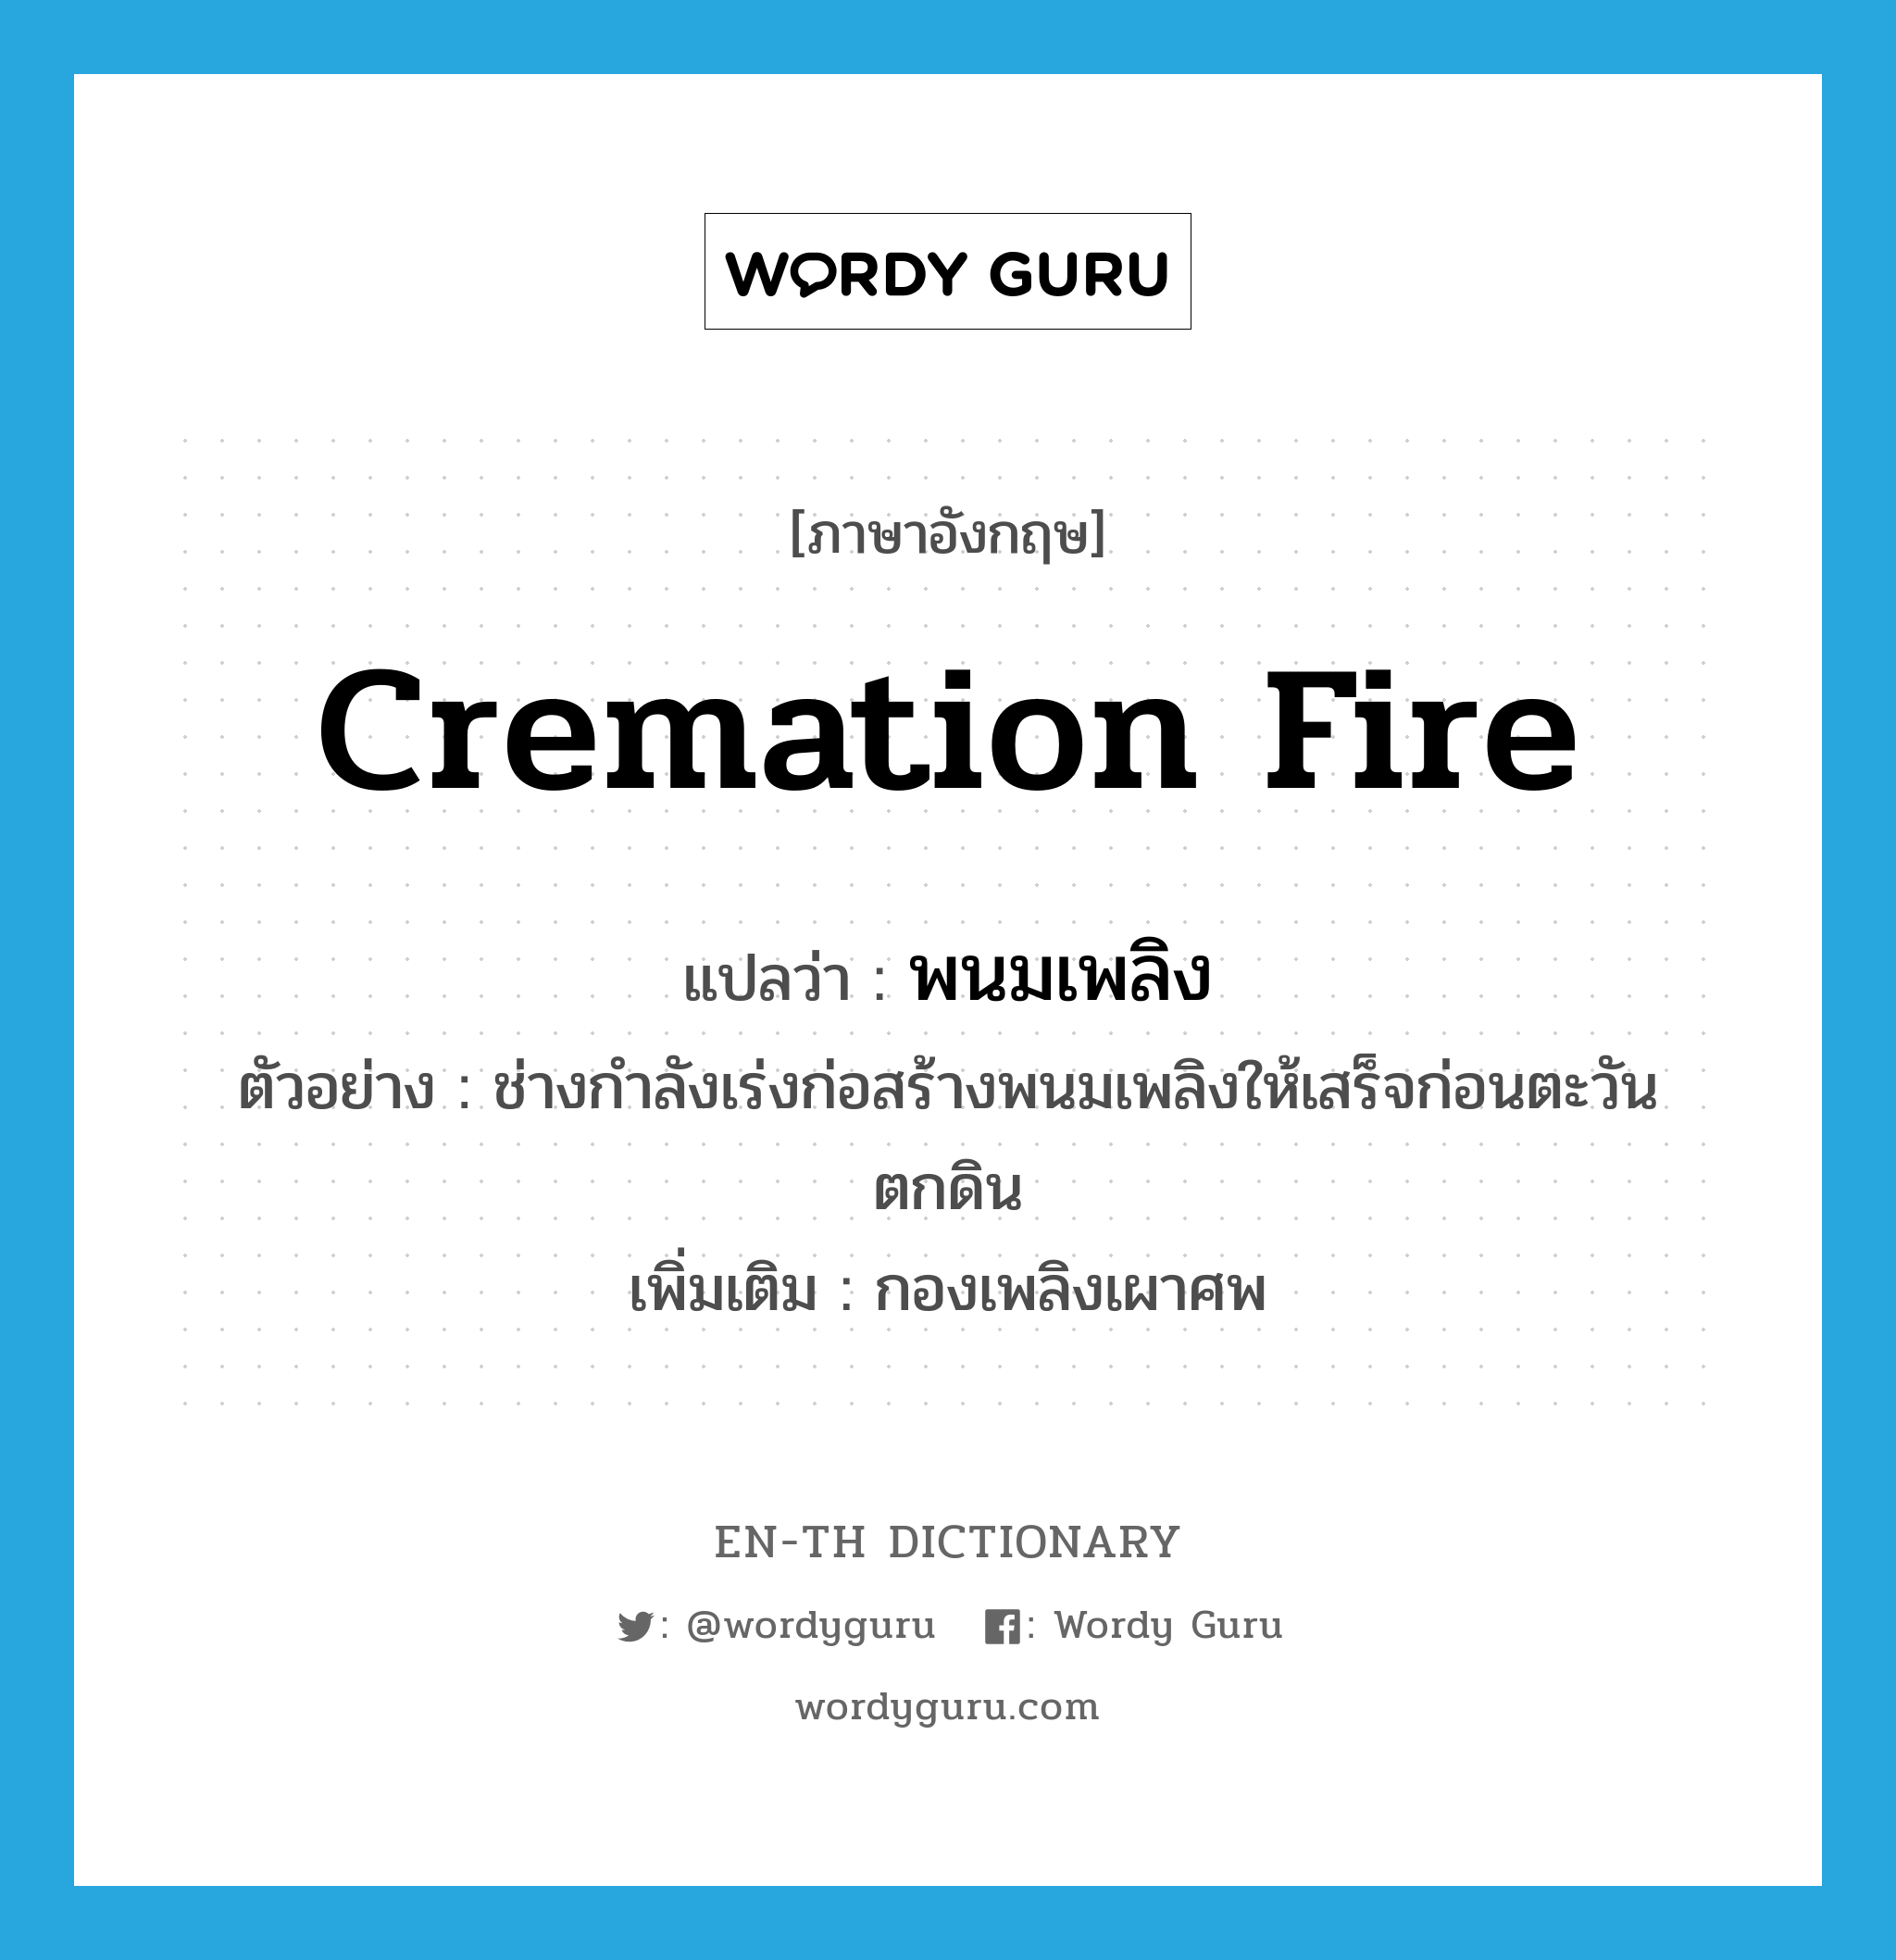 พนมเพลิง ภาษาอังกฤษ?, คำศัพท์ภาษาอังกฤษ พนมเพลิง แปลว่า cremation fire ประเภท N ตัวอย่าง ช่างกำลังเร่งก่อสร้างพนมเพลิงให้เสร็จก่อนตะวันตกดิน เพิ่มเติม กองเพลิงเผาศพ หมวด N